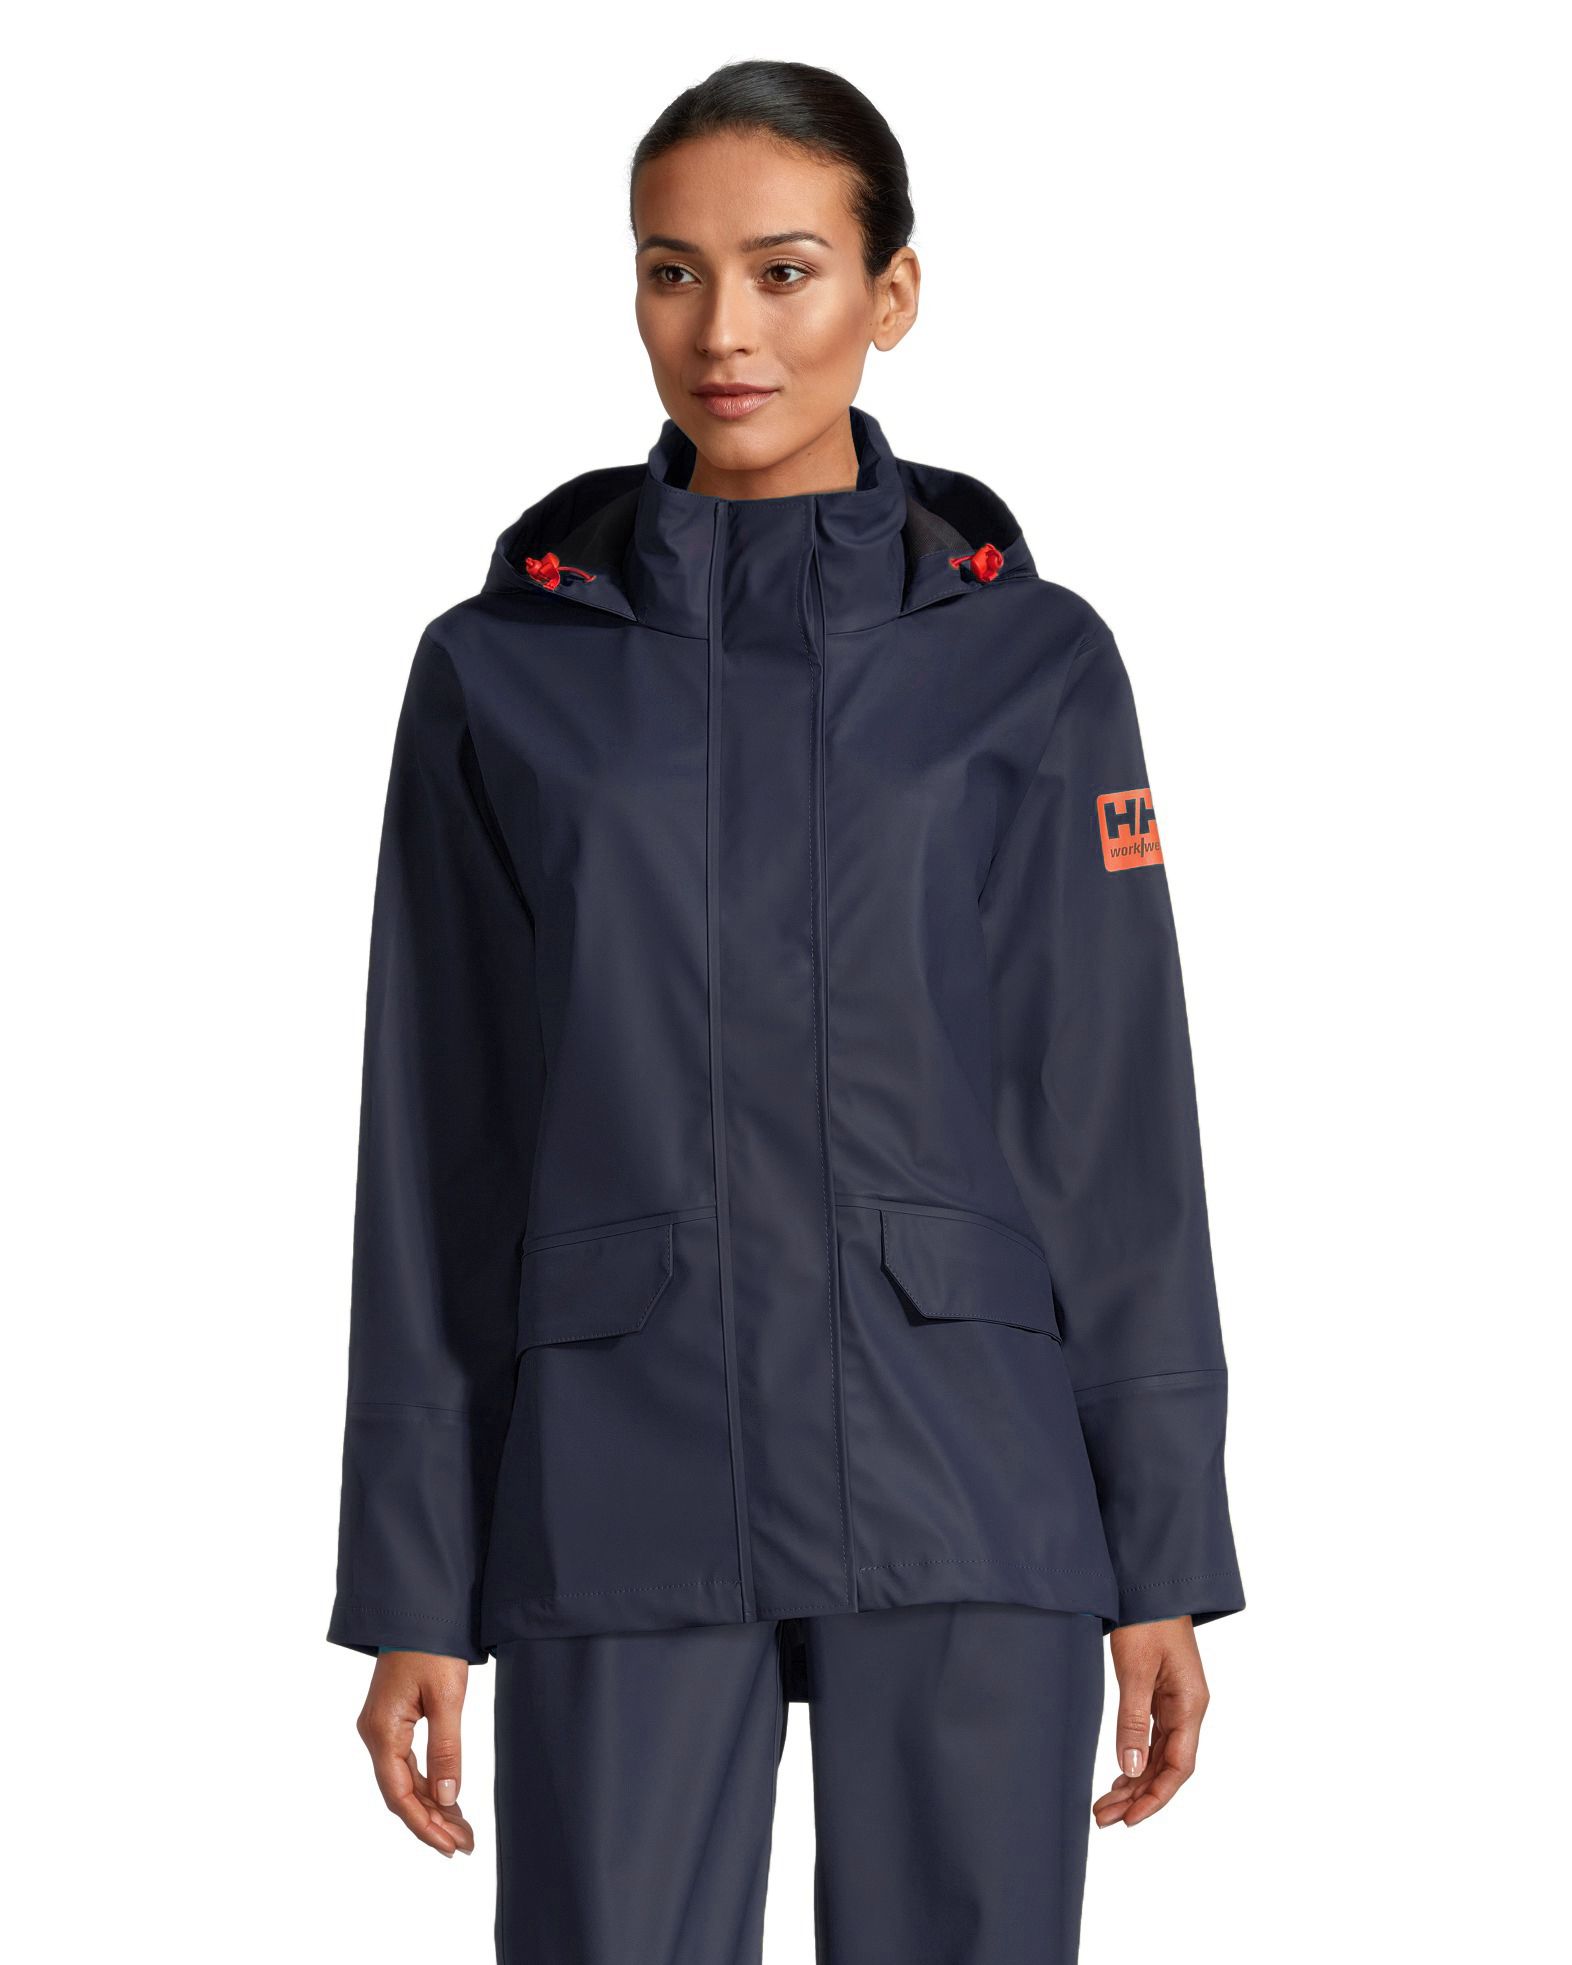 Helly Hansen Workwear Women's Luna PU Waterproof Rain Jacket